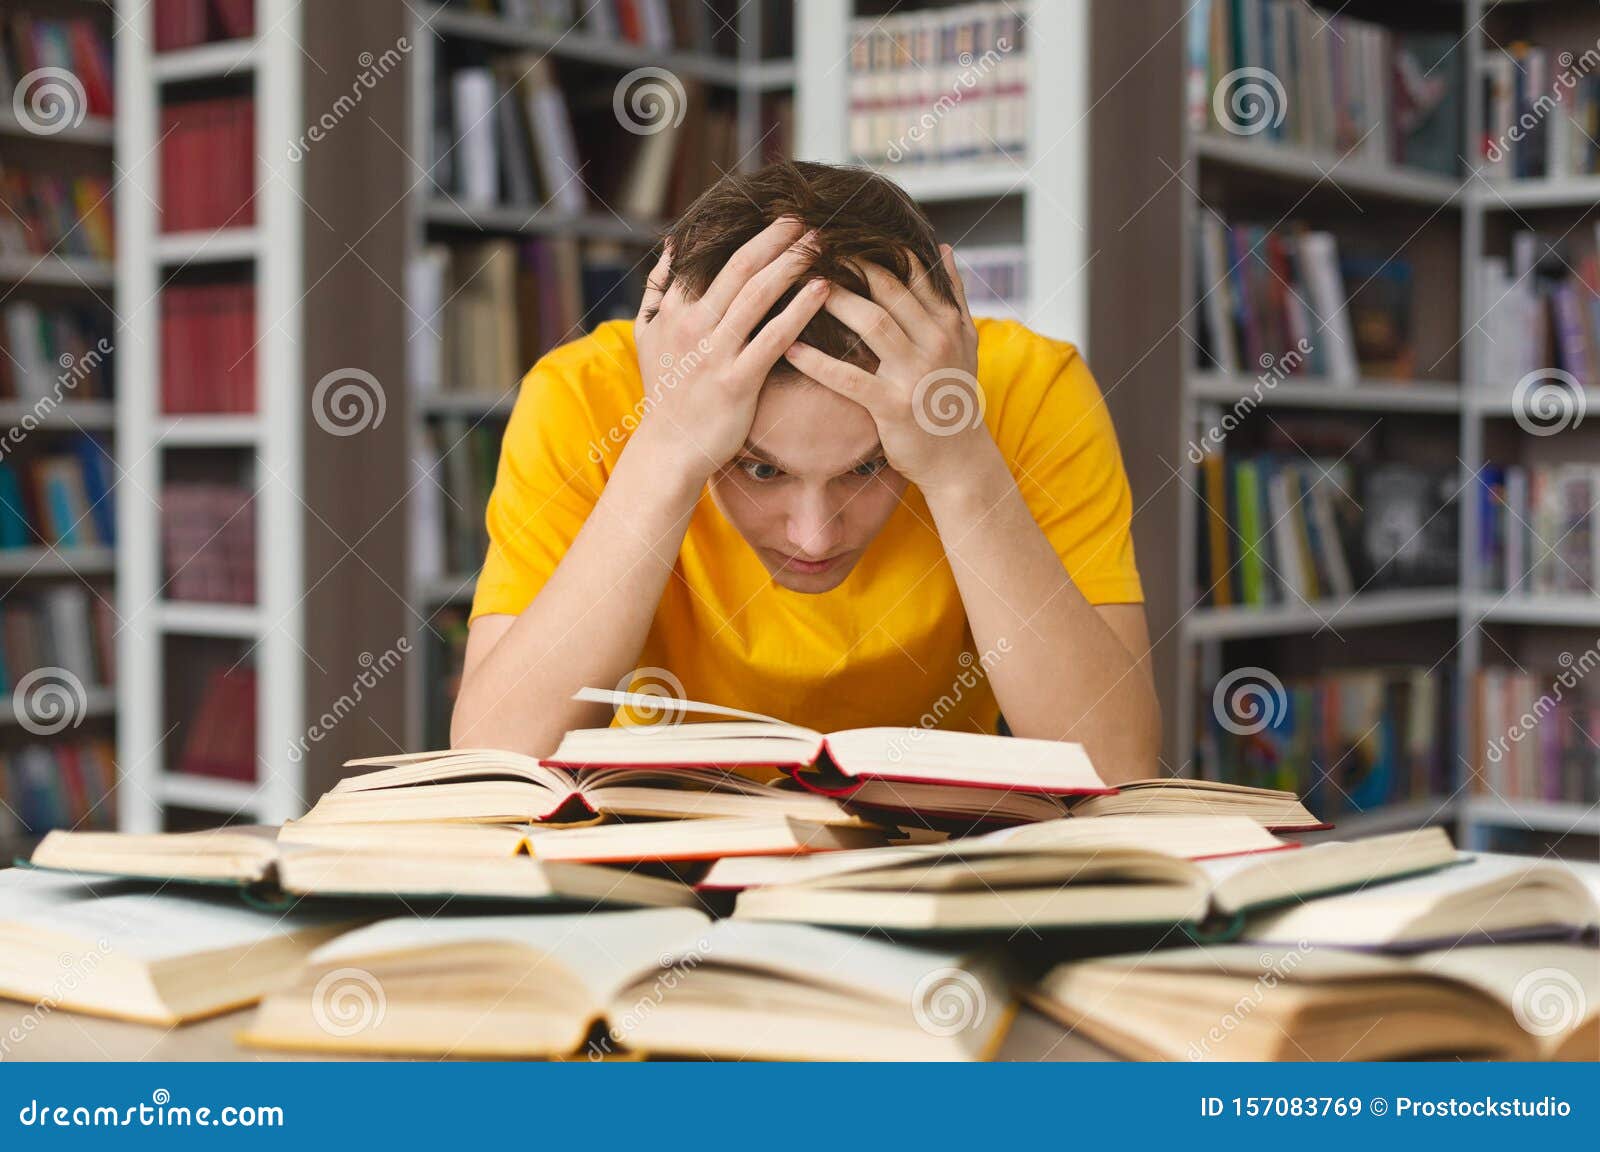 Устаю читать. Замученный студент. Девушка среди книг. Ученик держится за голову. Фото замученного студента.